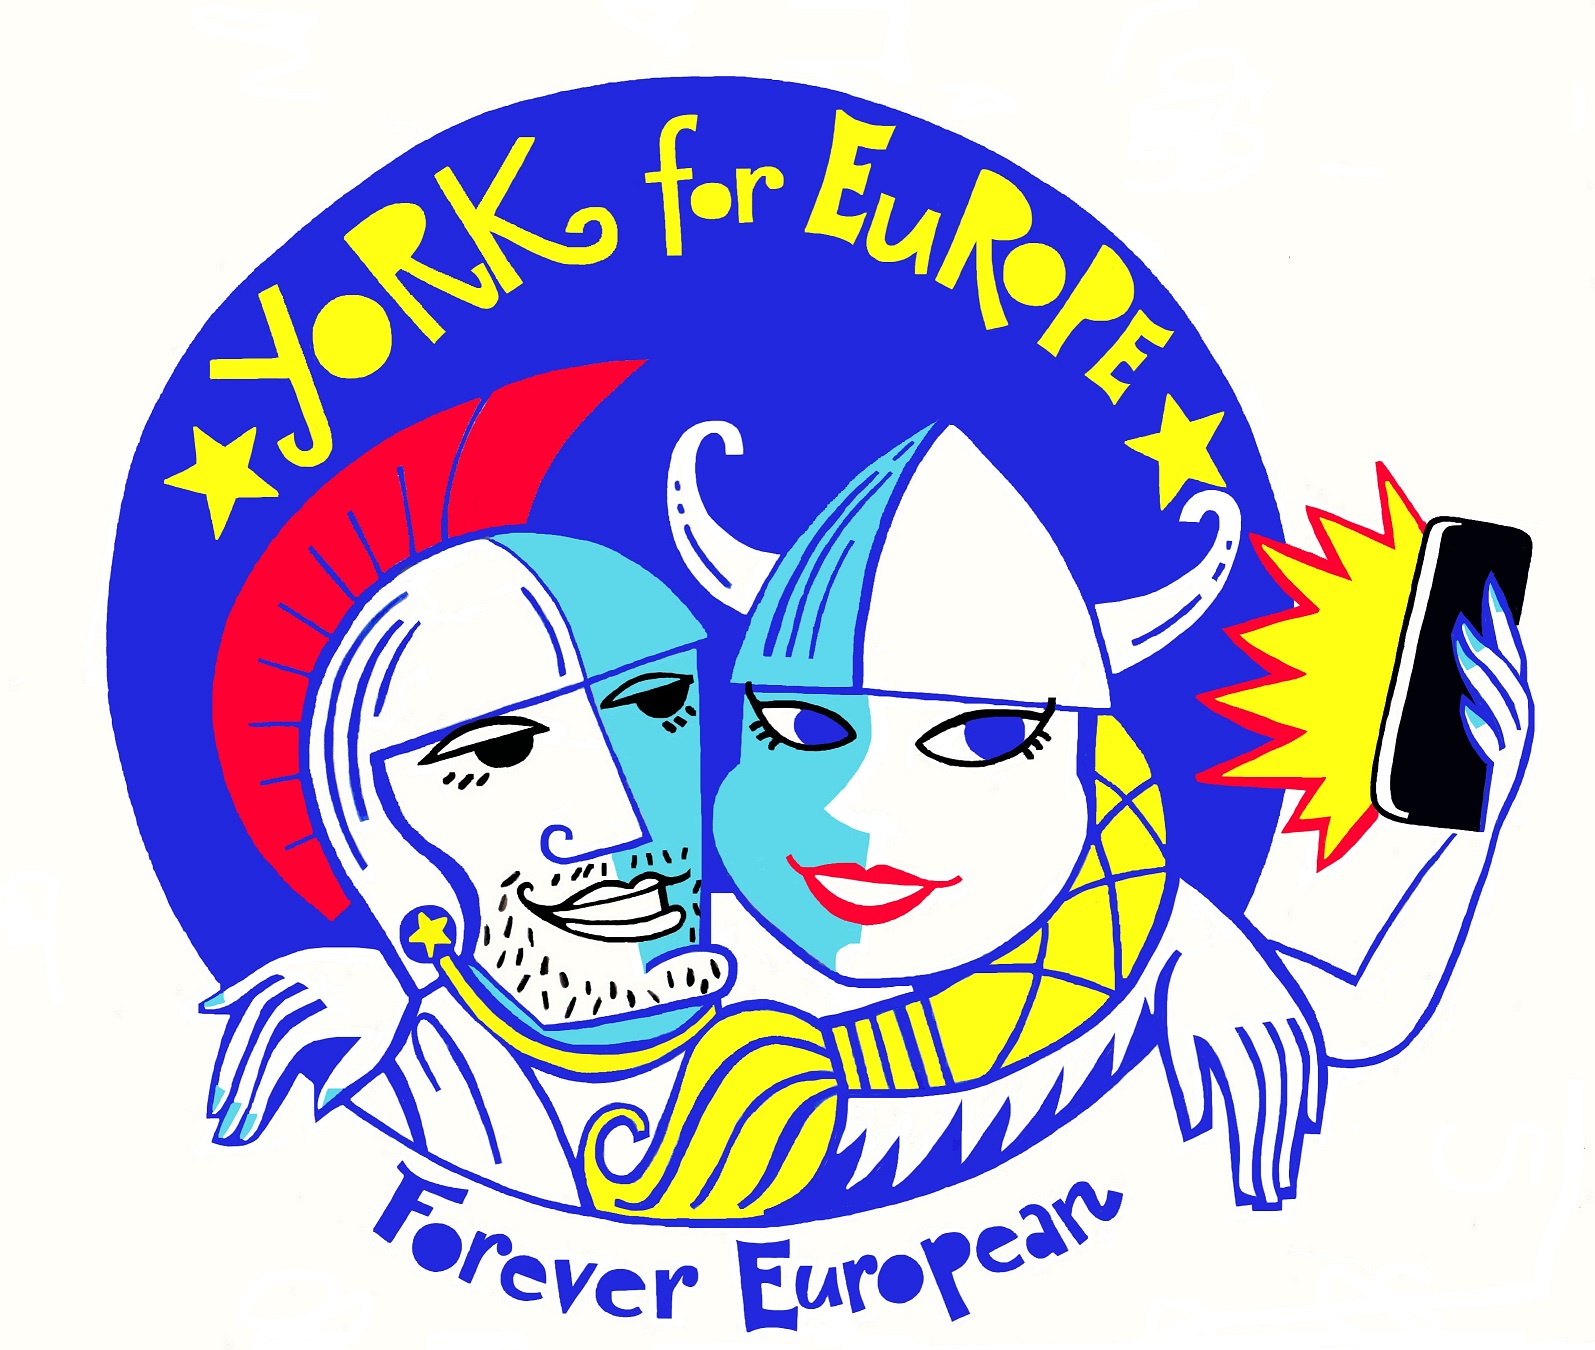 York for Europe logo